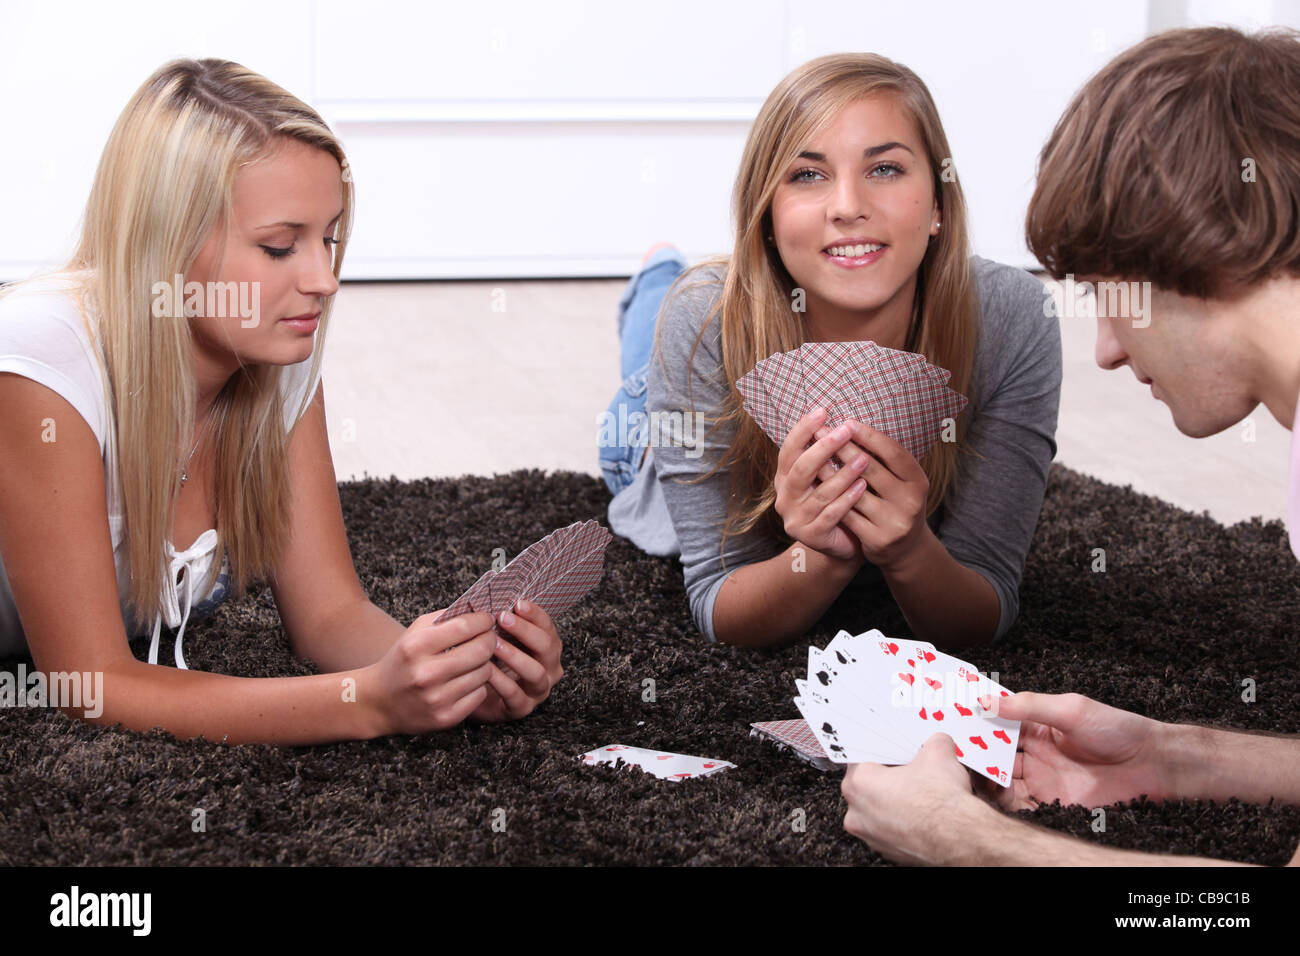 Сестра с братом в карты на раздевание. Мальчик и девочка играют в карты. Девочки играют в карты. Девочки играют в карты на раздевание. Девушки играющие в карты.